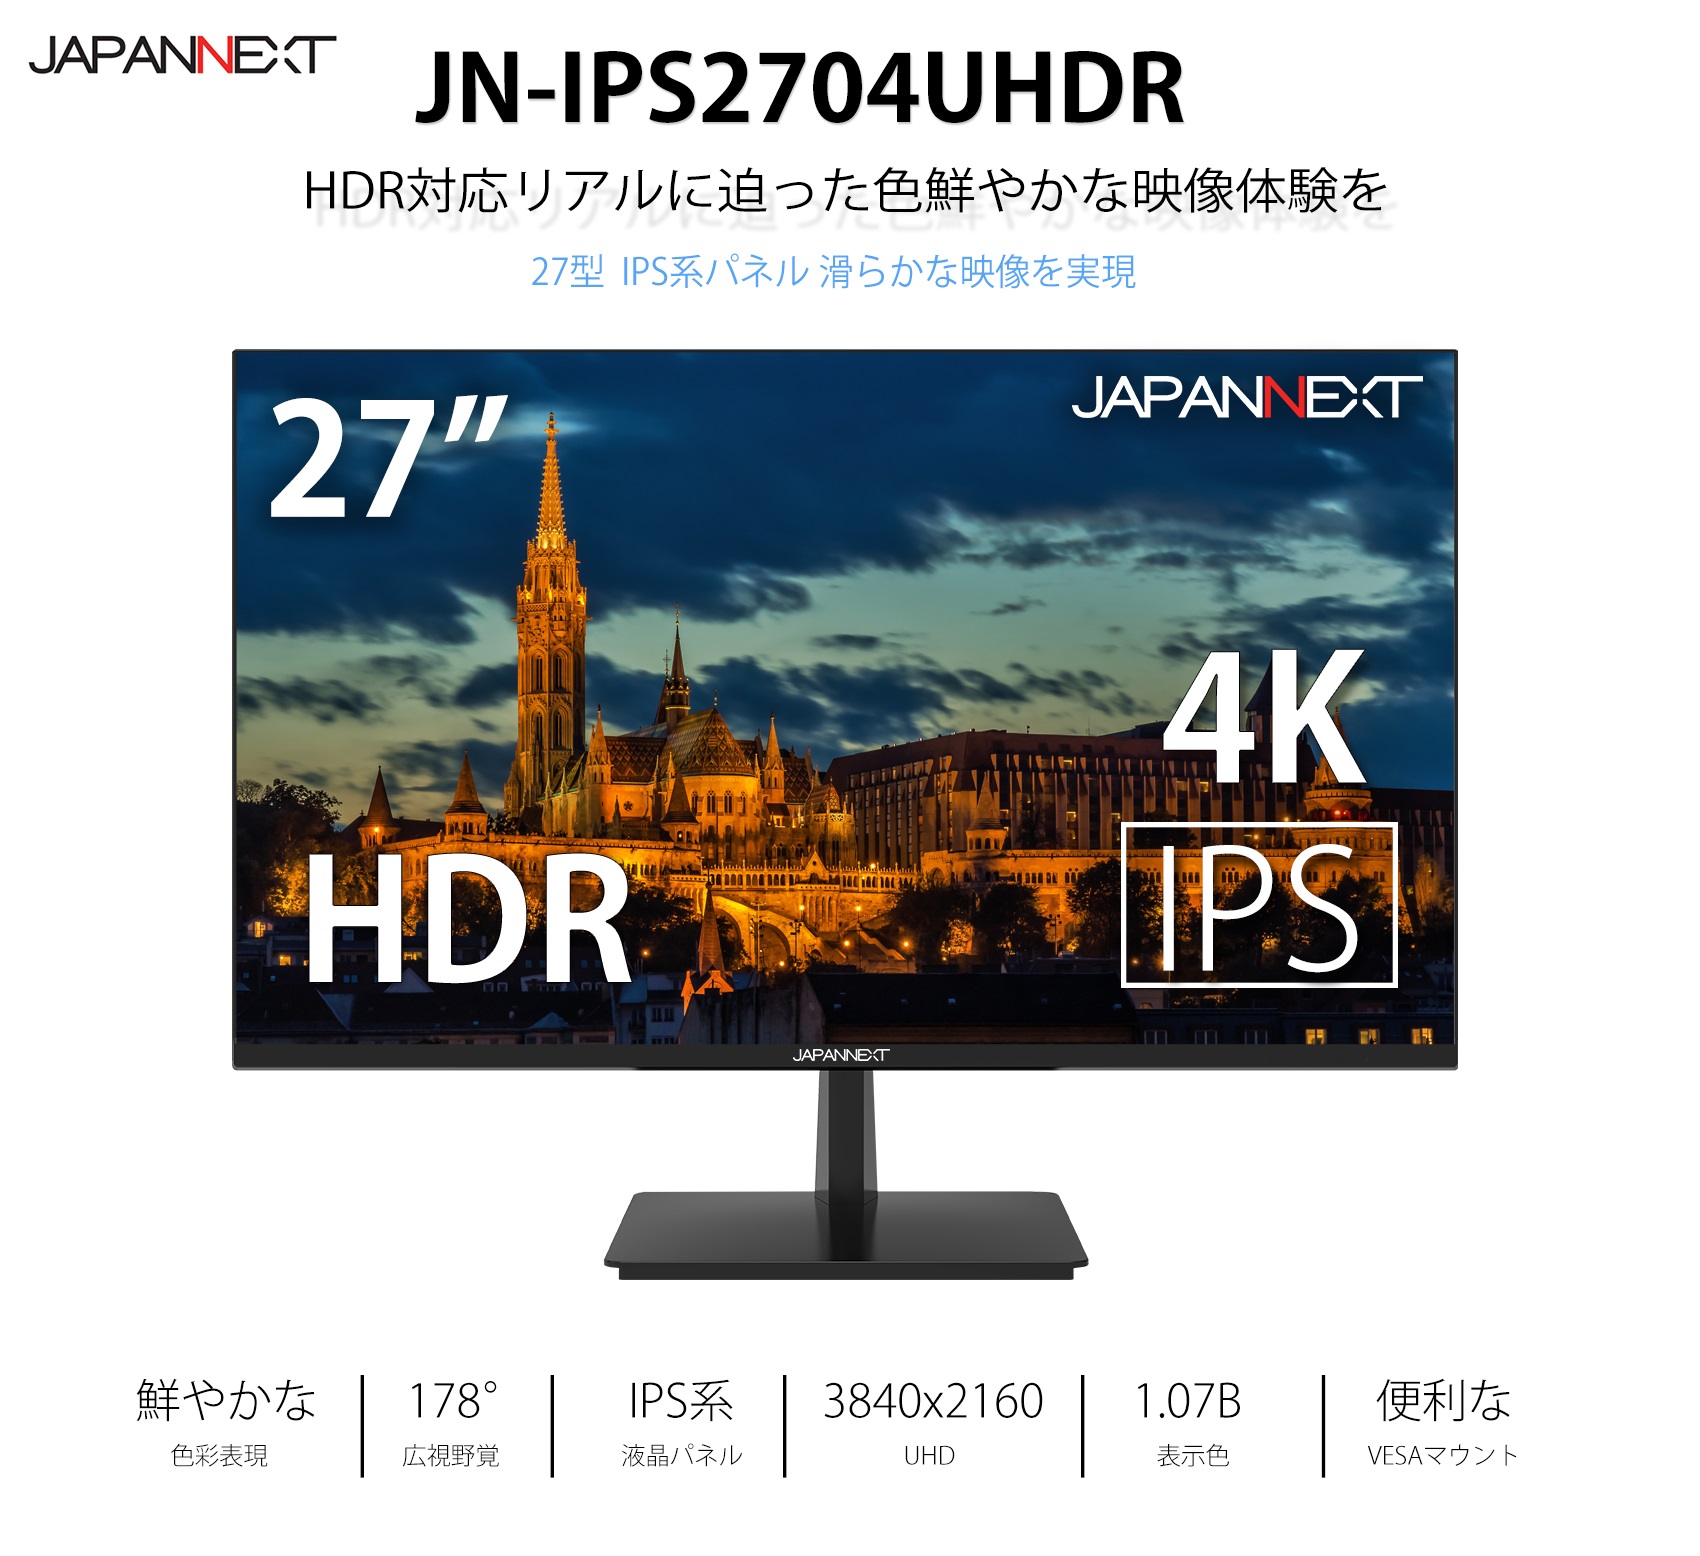 PC/タブレット ディスプレイ JAPANNEXT JN-IPS2704UHDR 4KHDR対応 27インチ液晶 